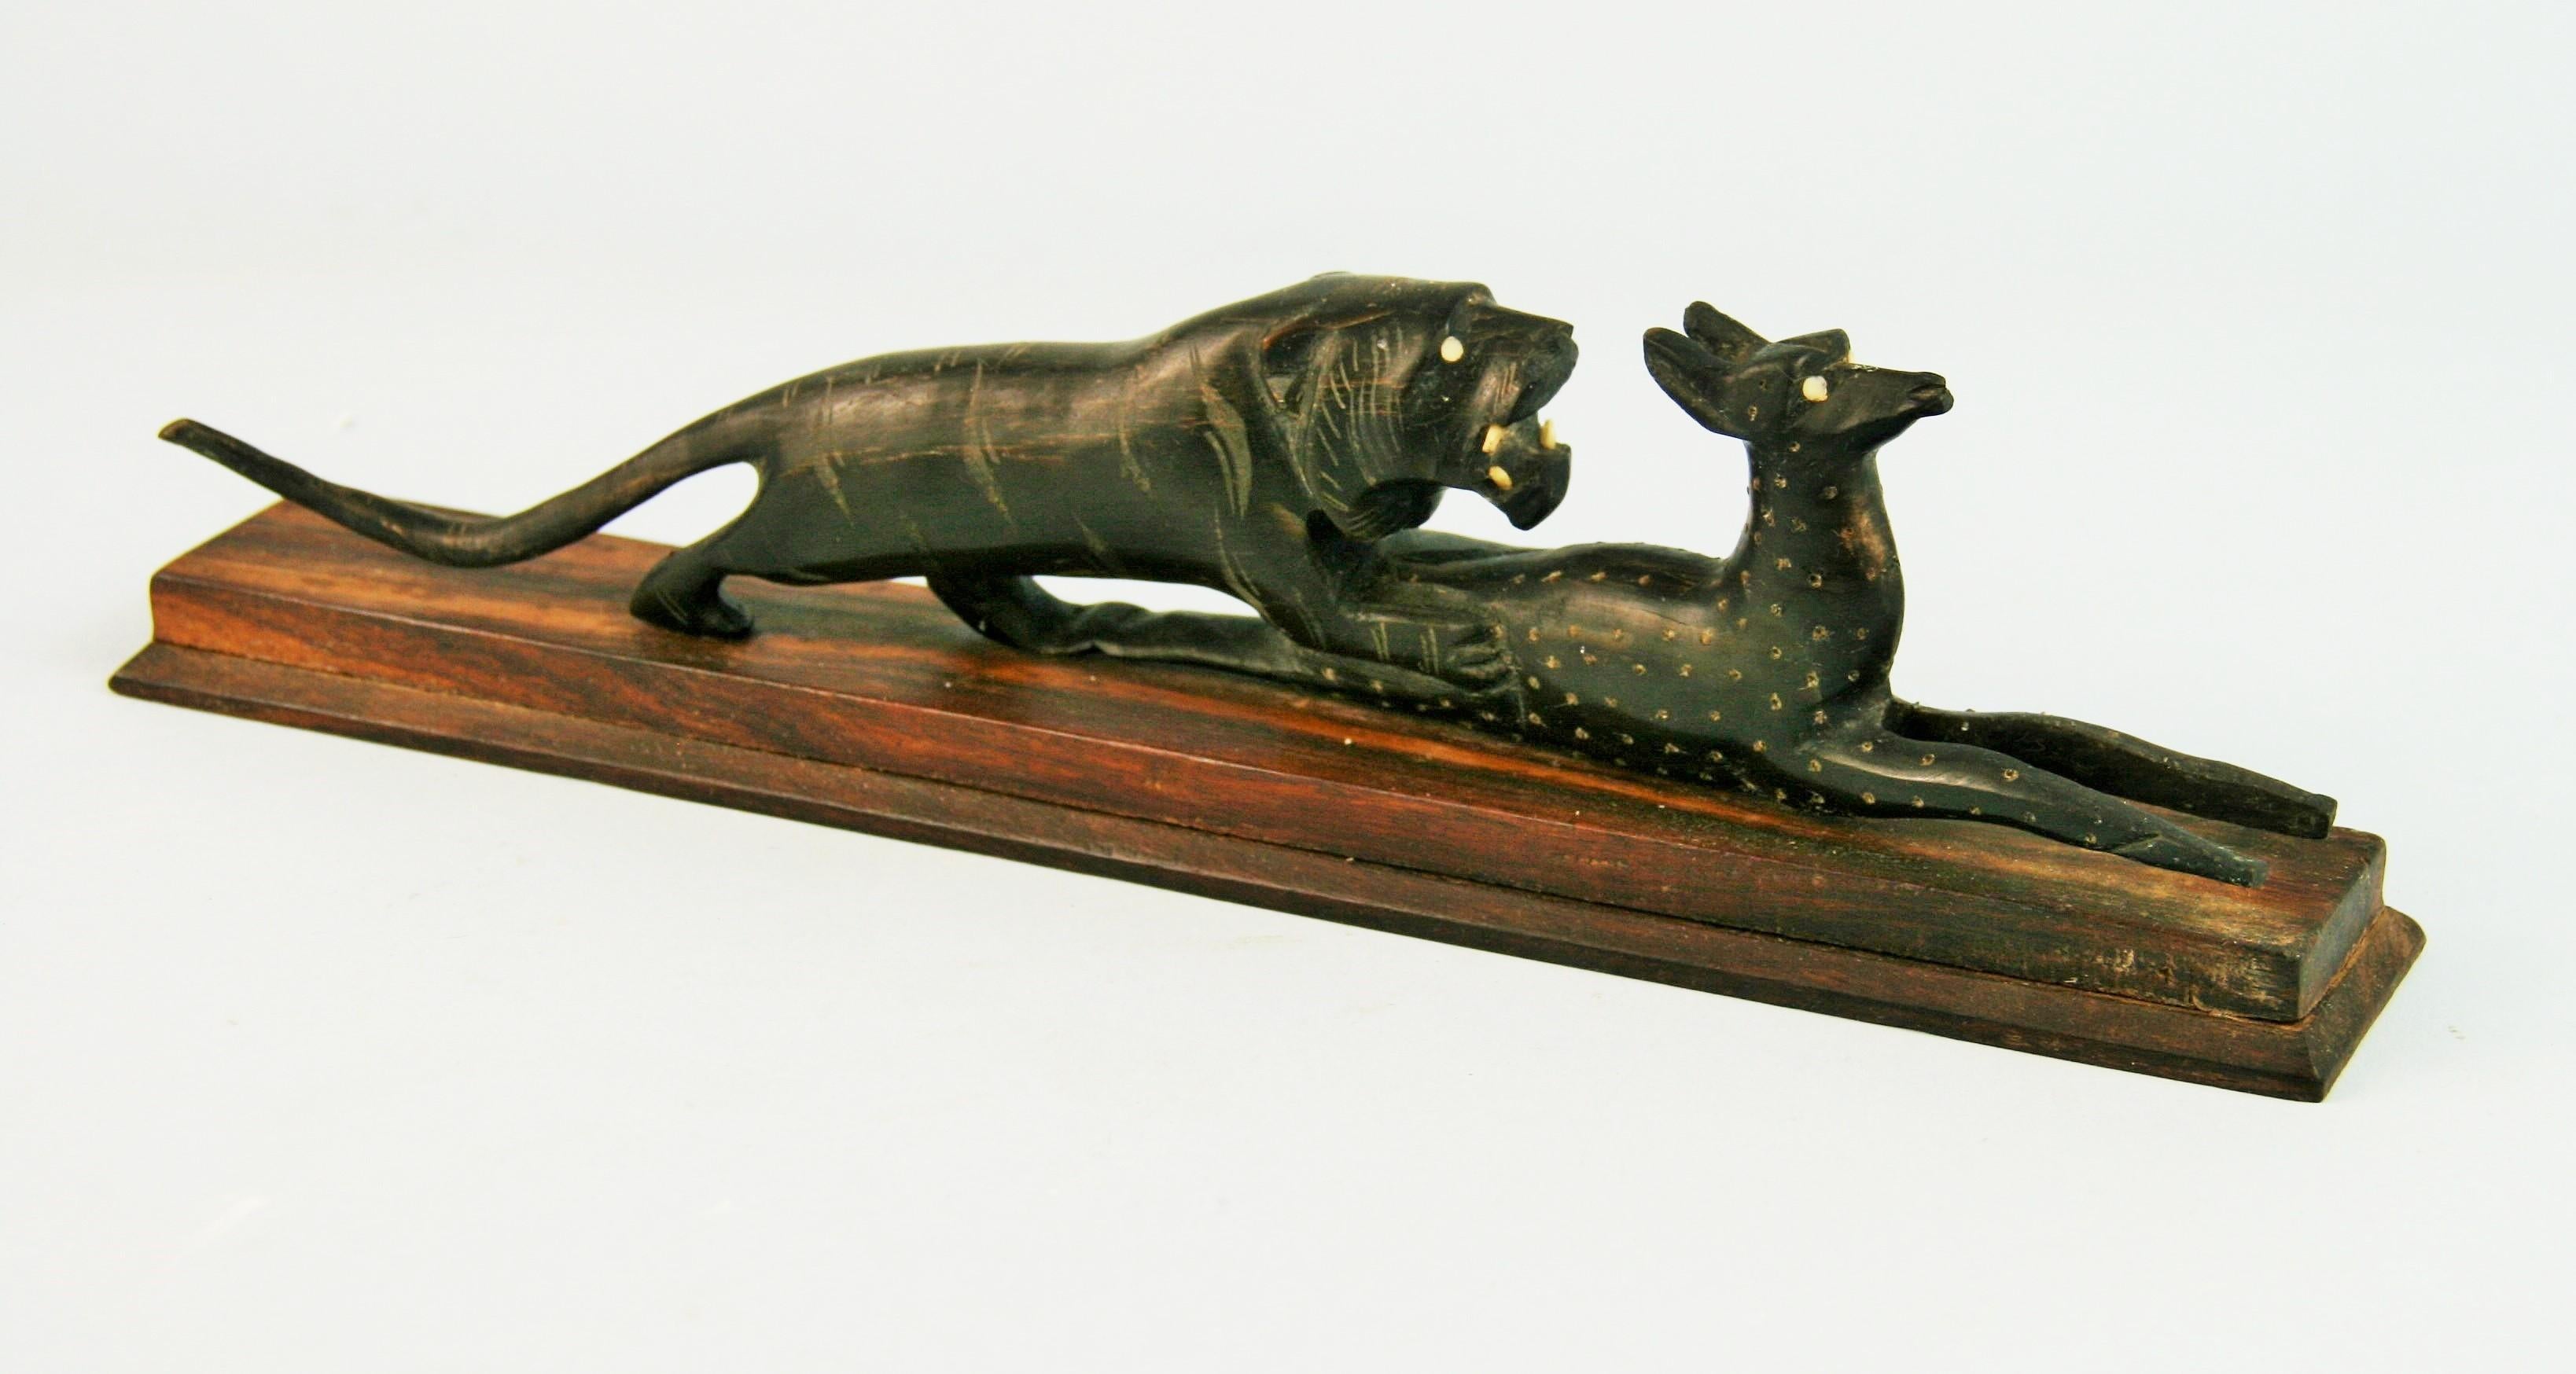 3-541  Japanische Art Deco Folk Art handgeschnitzte Skulptur einer Löwin und ihrer Gazelle Beute.